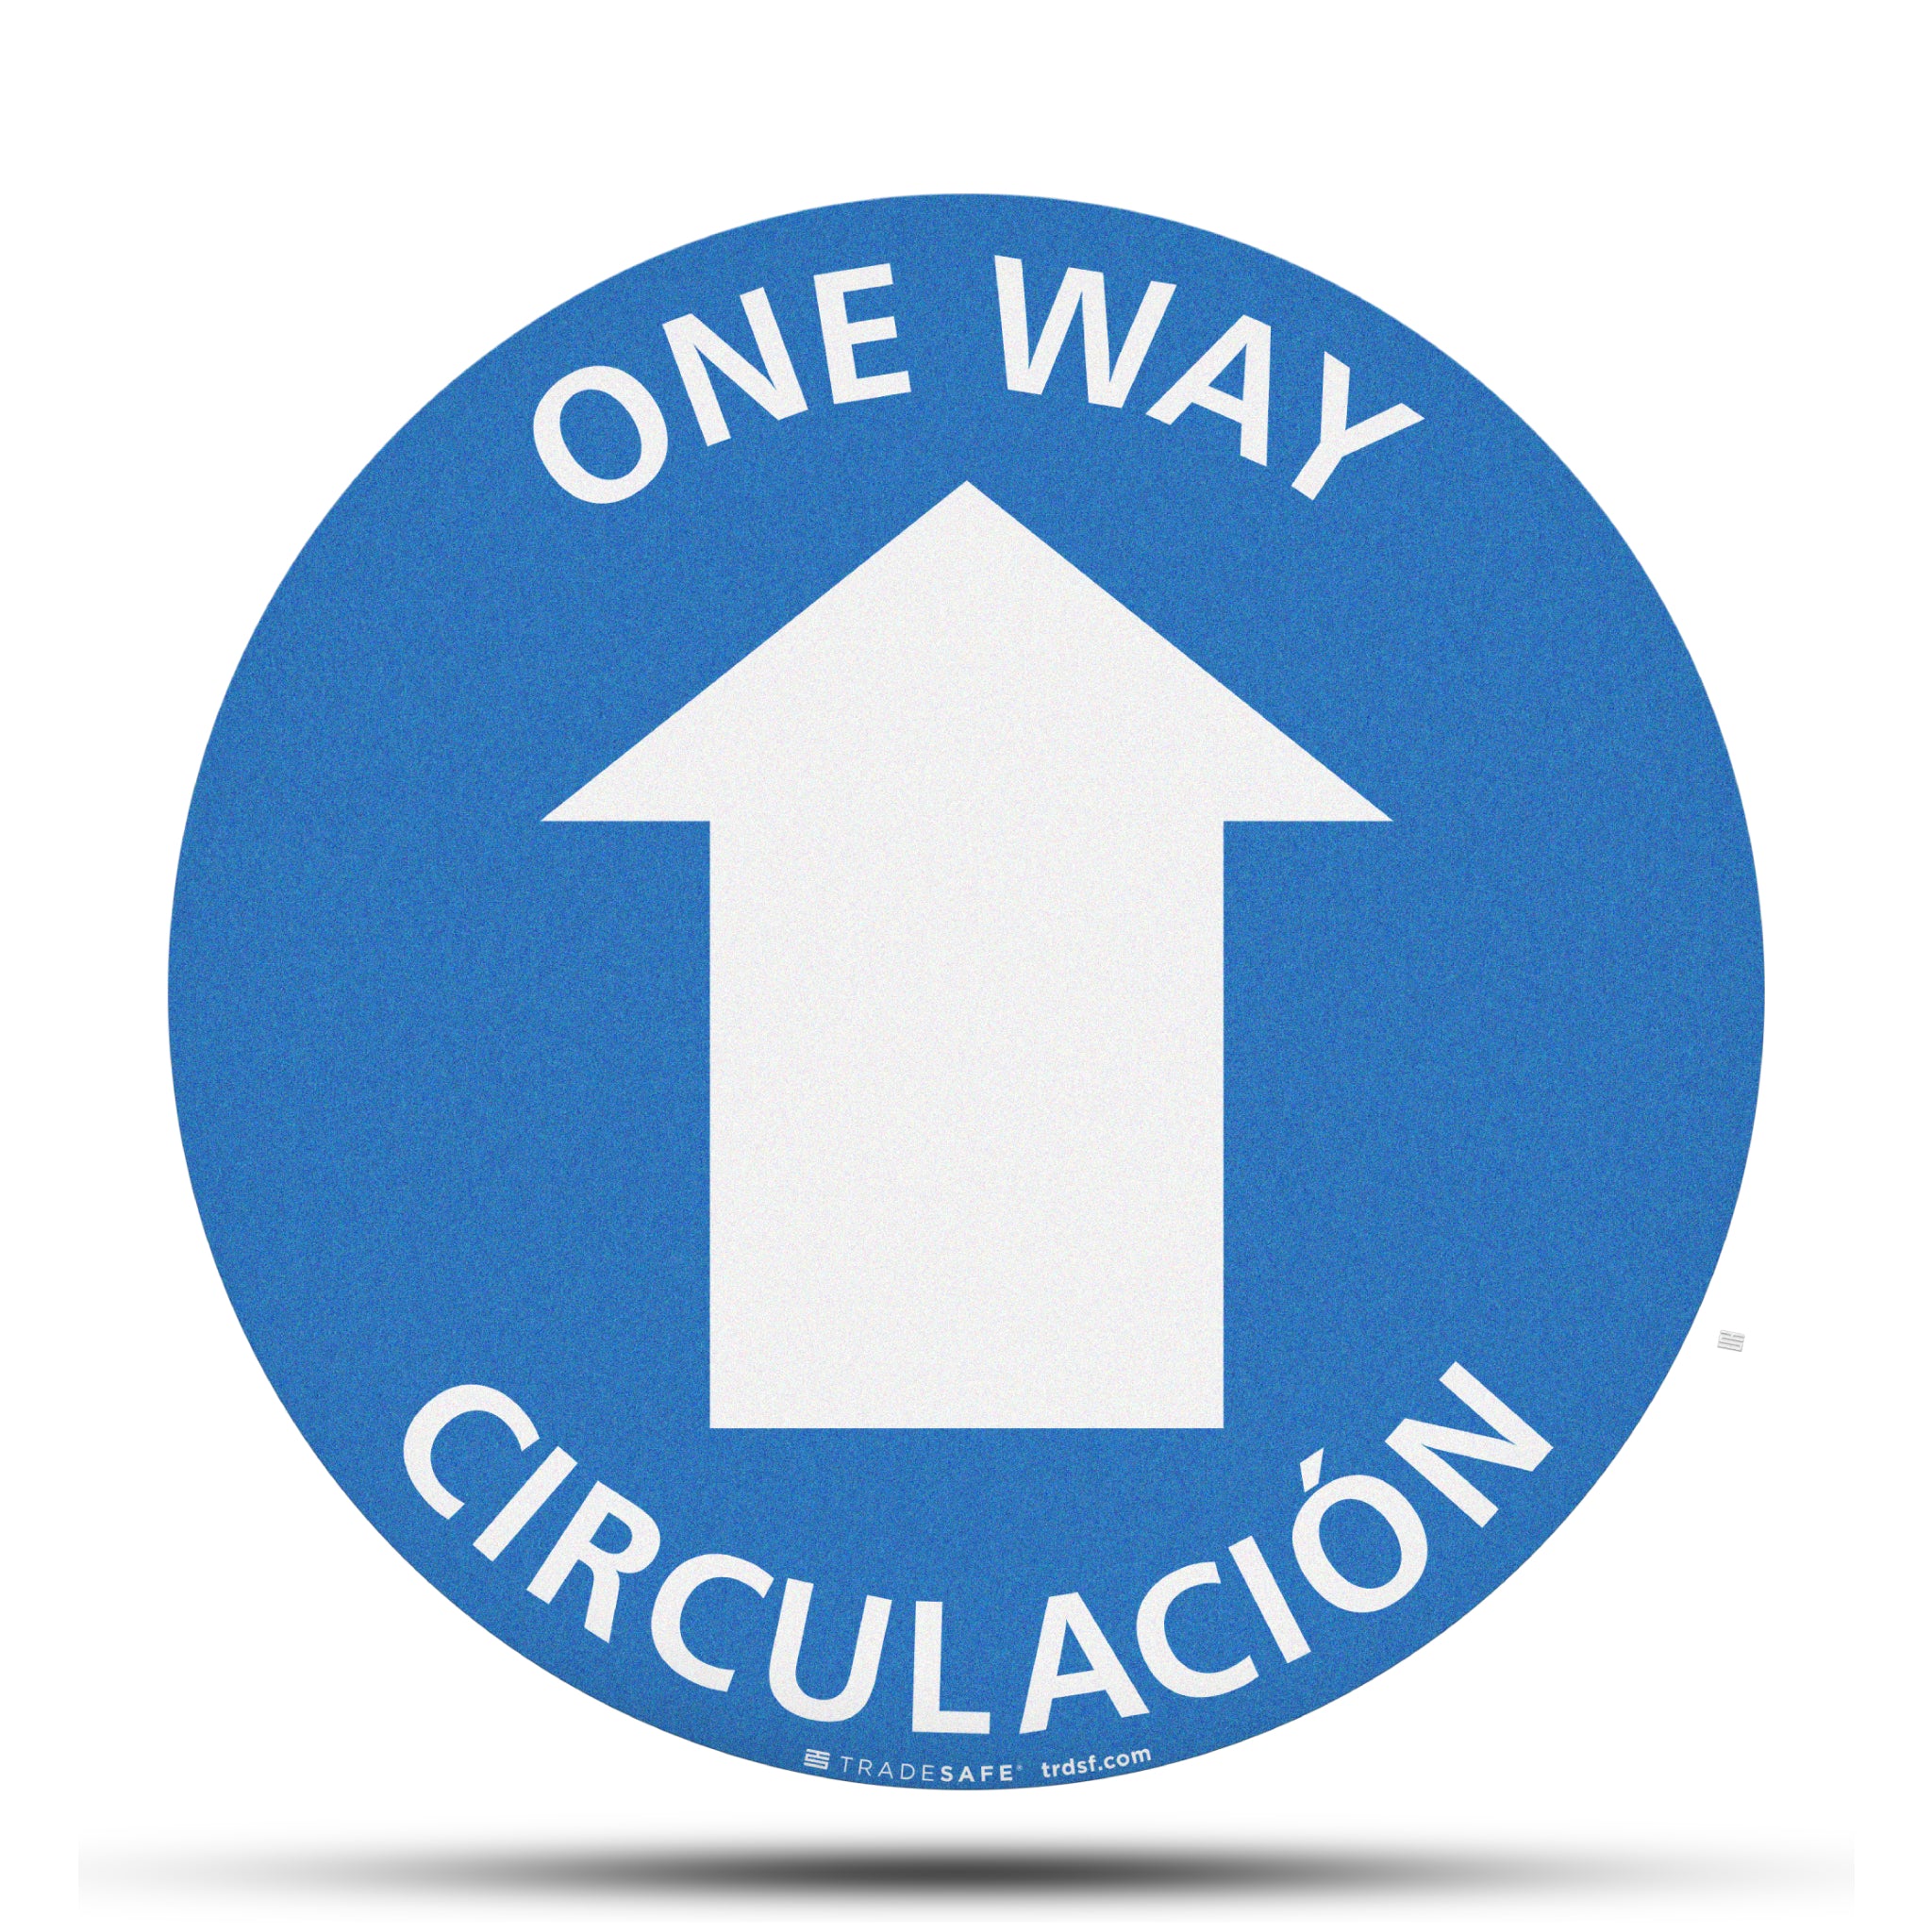 Señal antideslizante para piso – One Way/Circulación – One Way Sign – Circulación de Una Vía – Bilingüe (inglés/español)